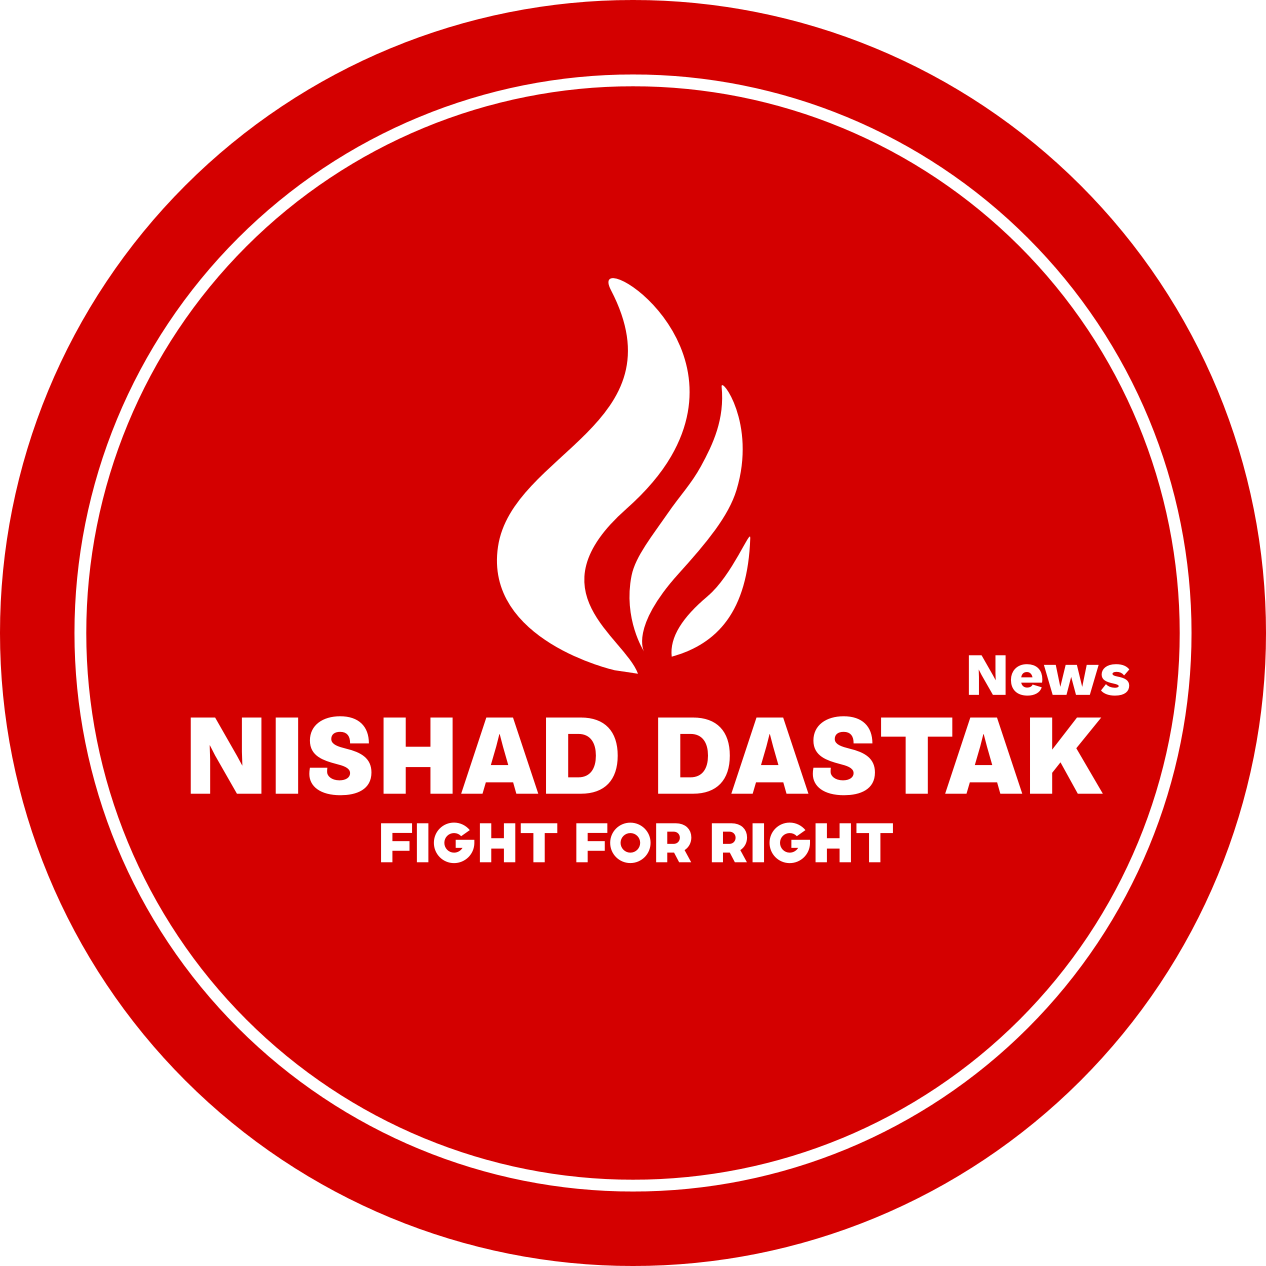 NIshad Dastak